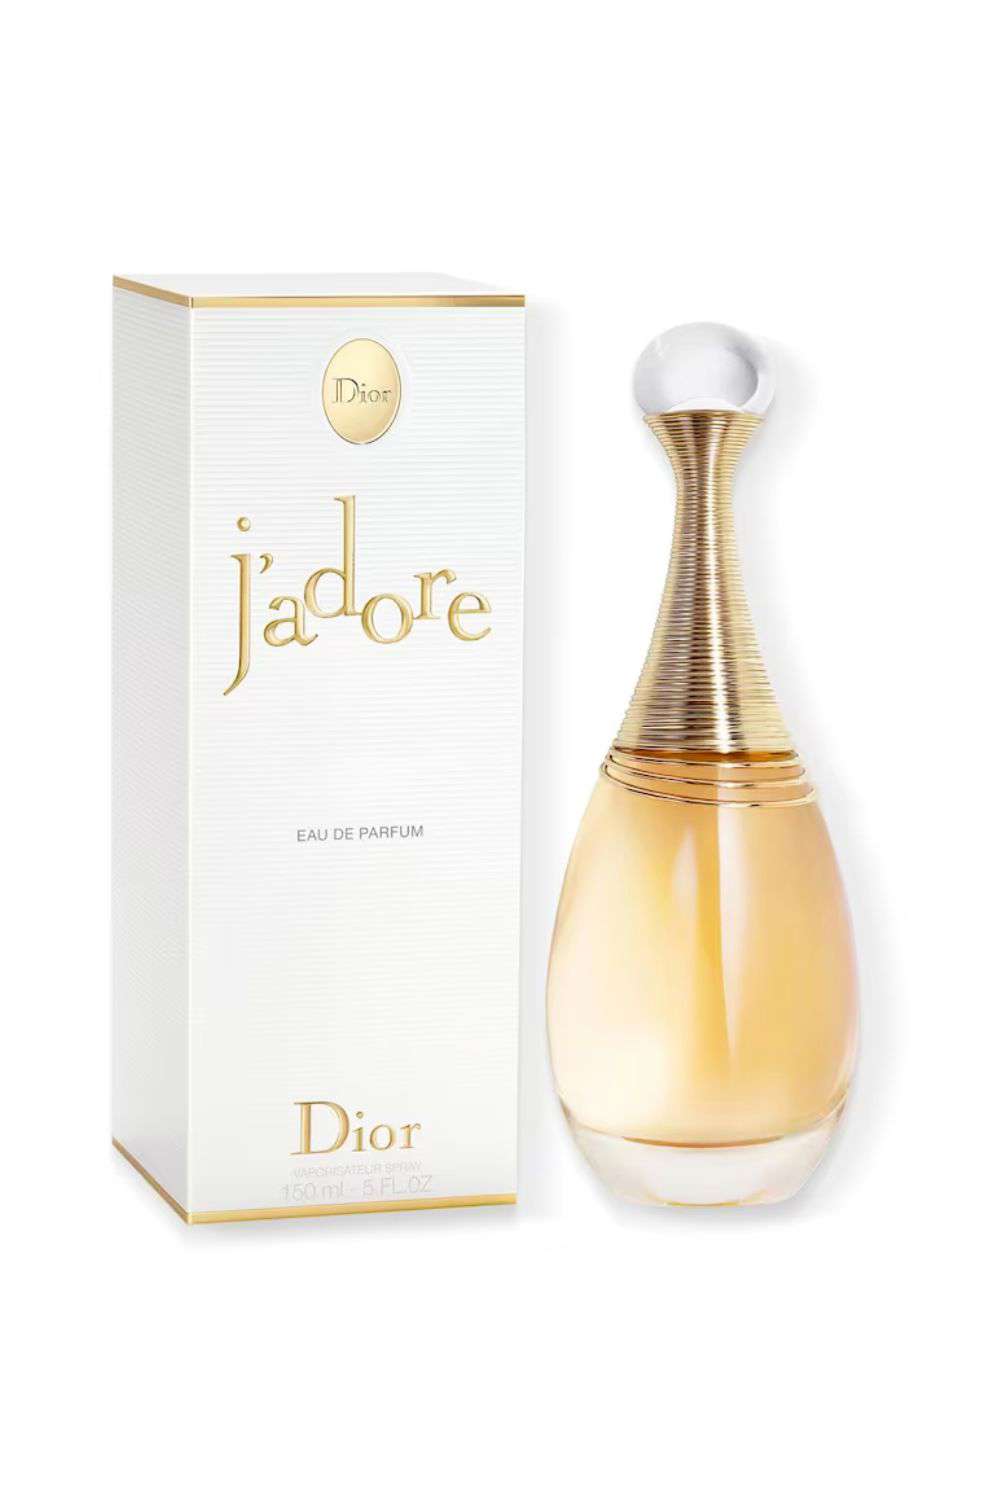 J'ADORE de Dior